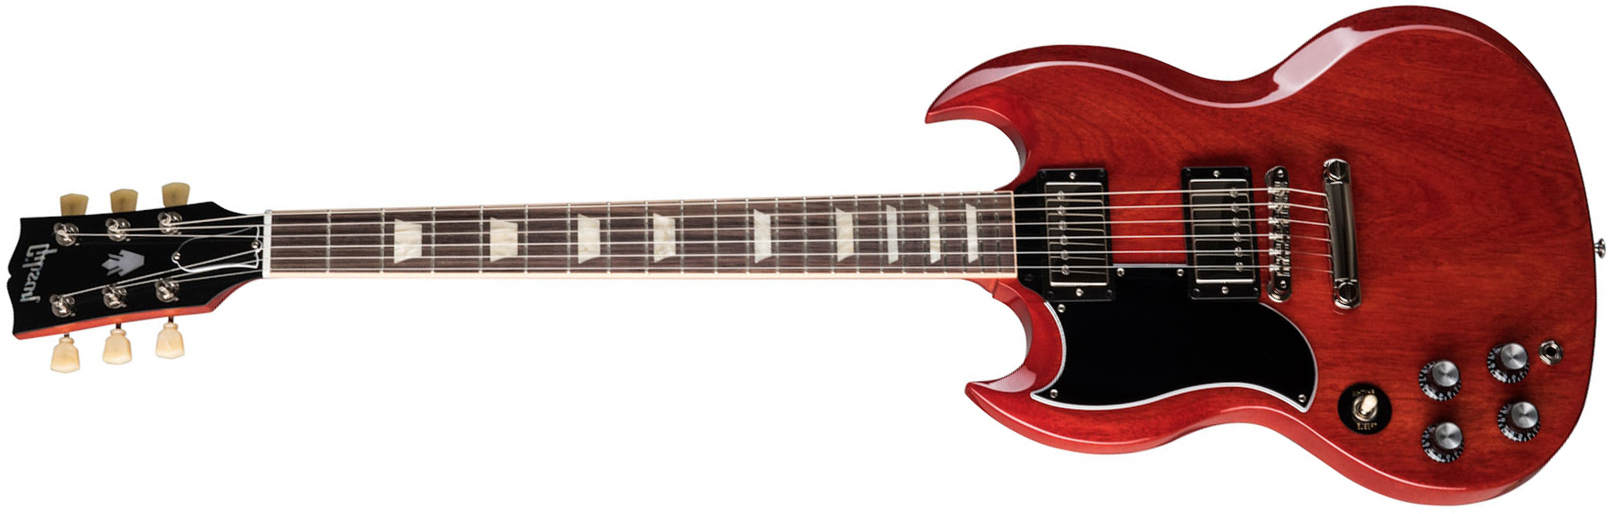 Gibson Sg Standard '61 Lh Gaucher 2h Ht Rw - Vintage Cherry - Linkshandige elektrische gitaar - Main picture